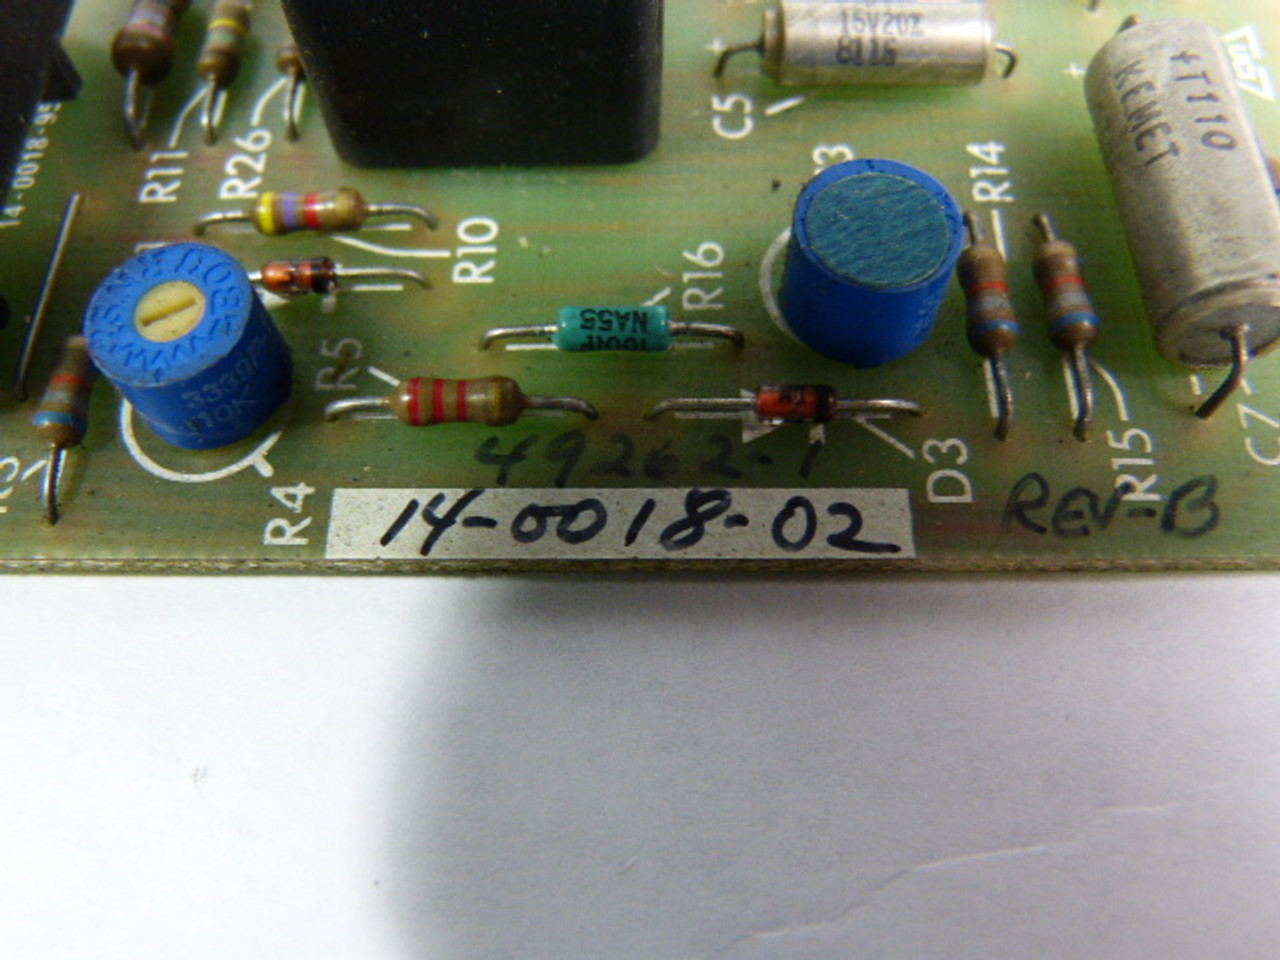 Gettys 14-0018-02 Firing Circuit Module Board USED